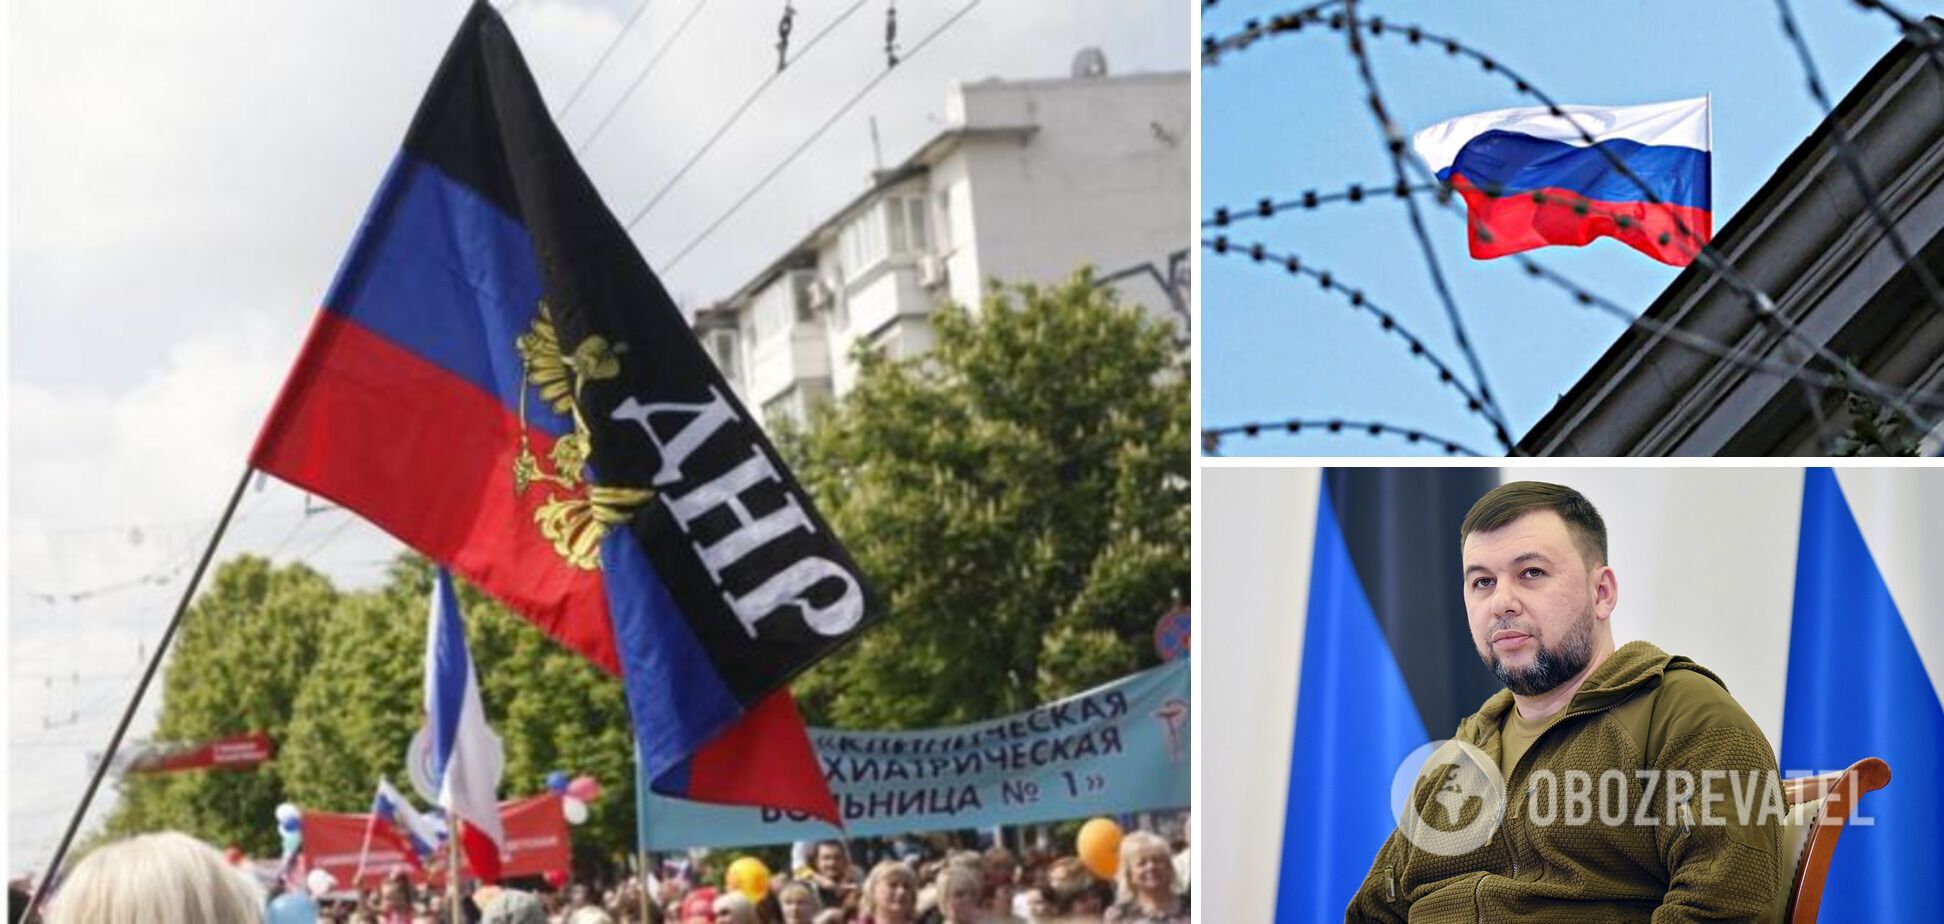 Ватажок бойовиків 'ДНР' Пушилін увів військову цензуру та заборонив виїзд 'чиновників'. Документ